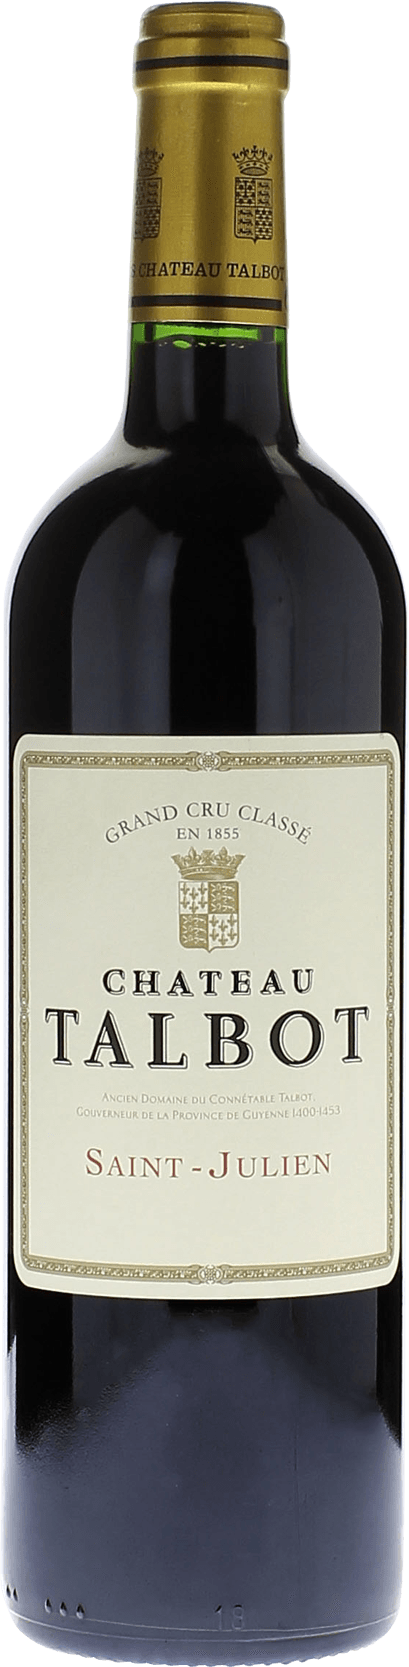 Talbot 2019 4me Grand cru class Saint-Julien, Bordeaux rouge